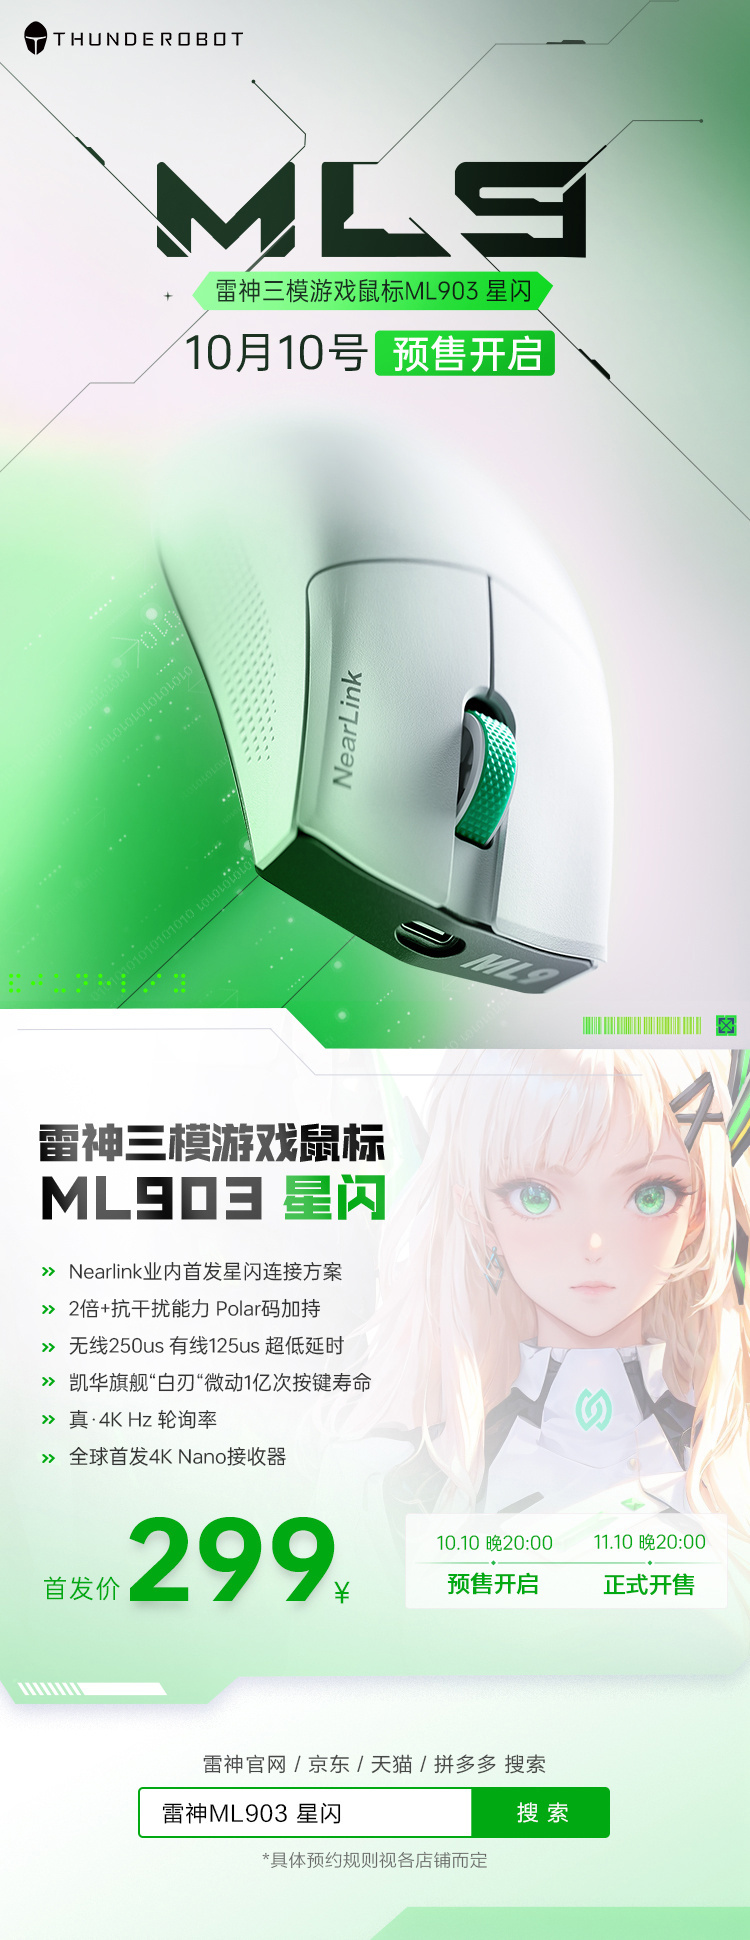 雷神 ML903 星闪三模游戏鼠标今日开启预售，首发 299 元